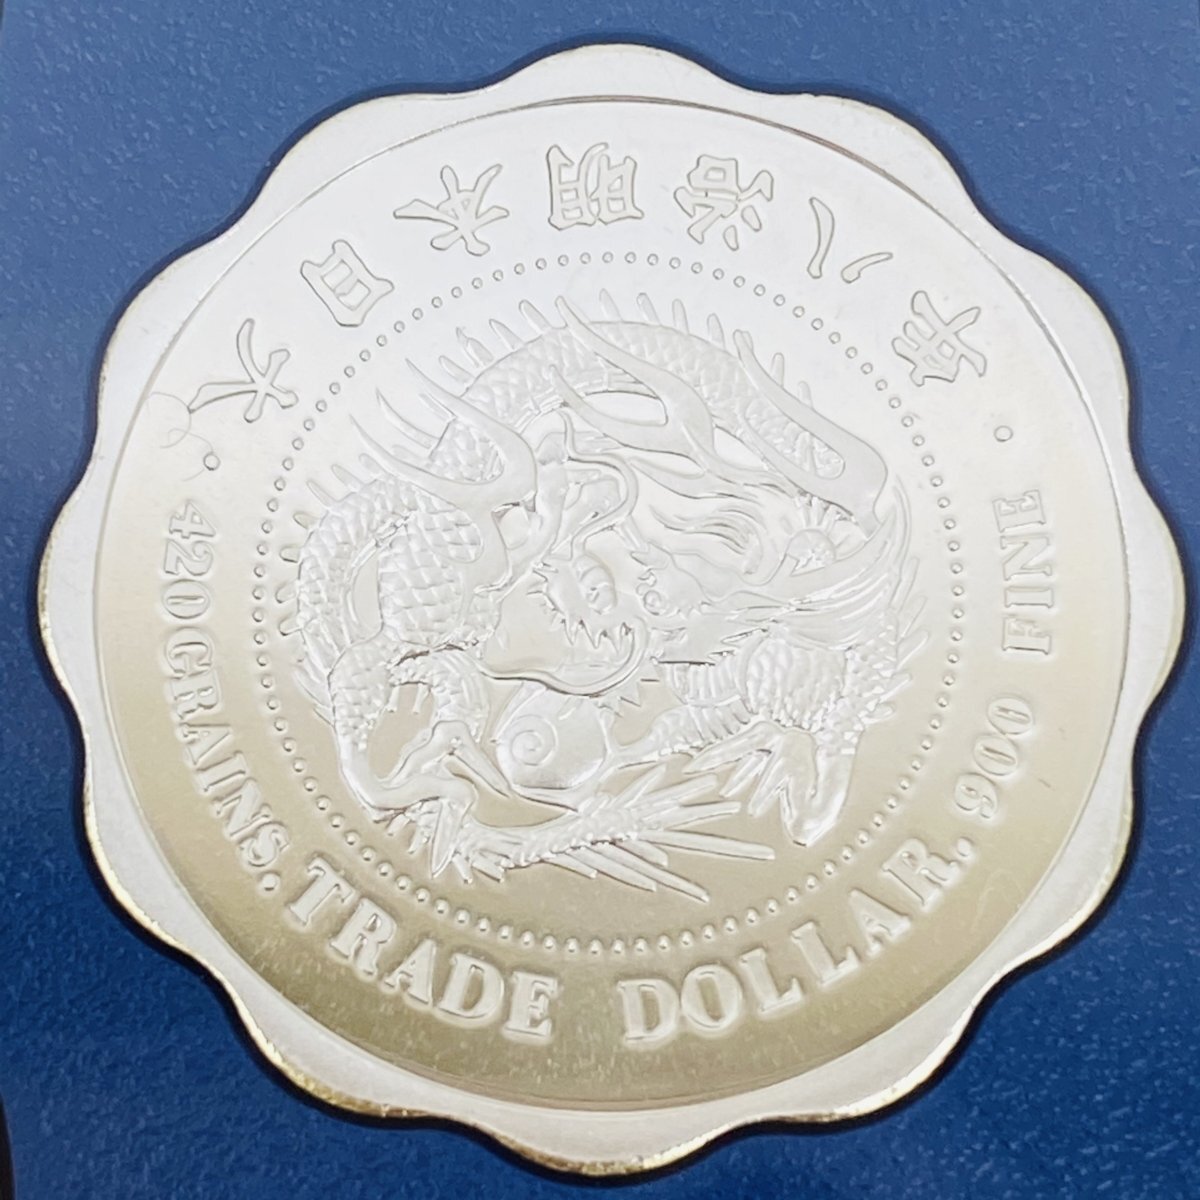 1円スタート オールドコインメダルシリーズ3 プルーフ貨幣セット 2001年 平成13年 記念硬貨 銀入 貴金属 メダル 通貨 造幣局 コイン PT2001_画像4